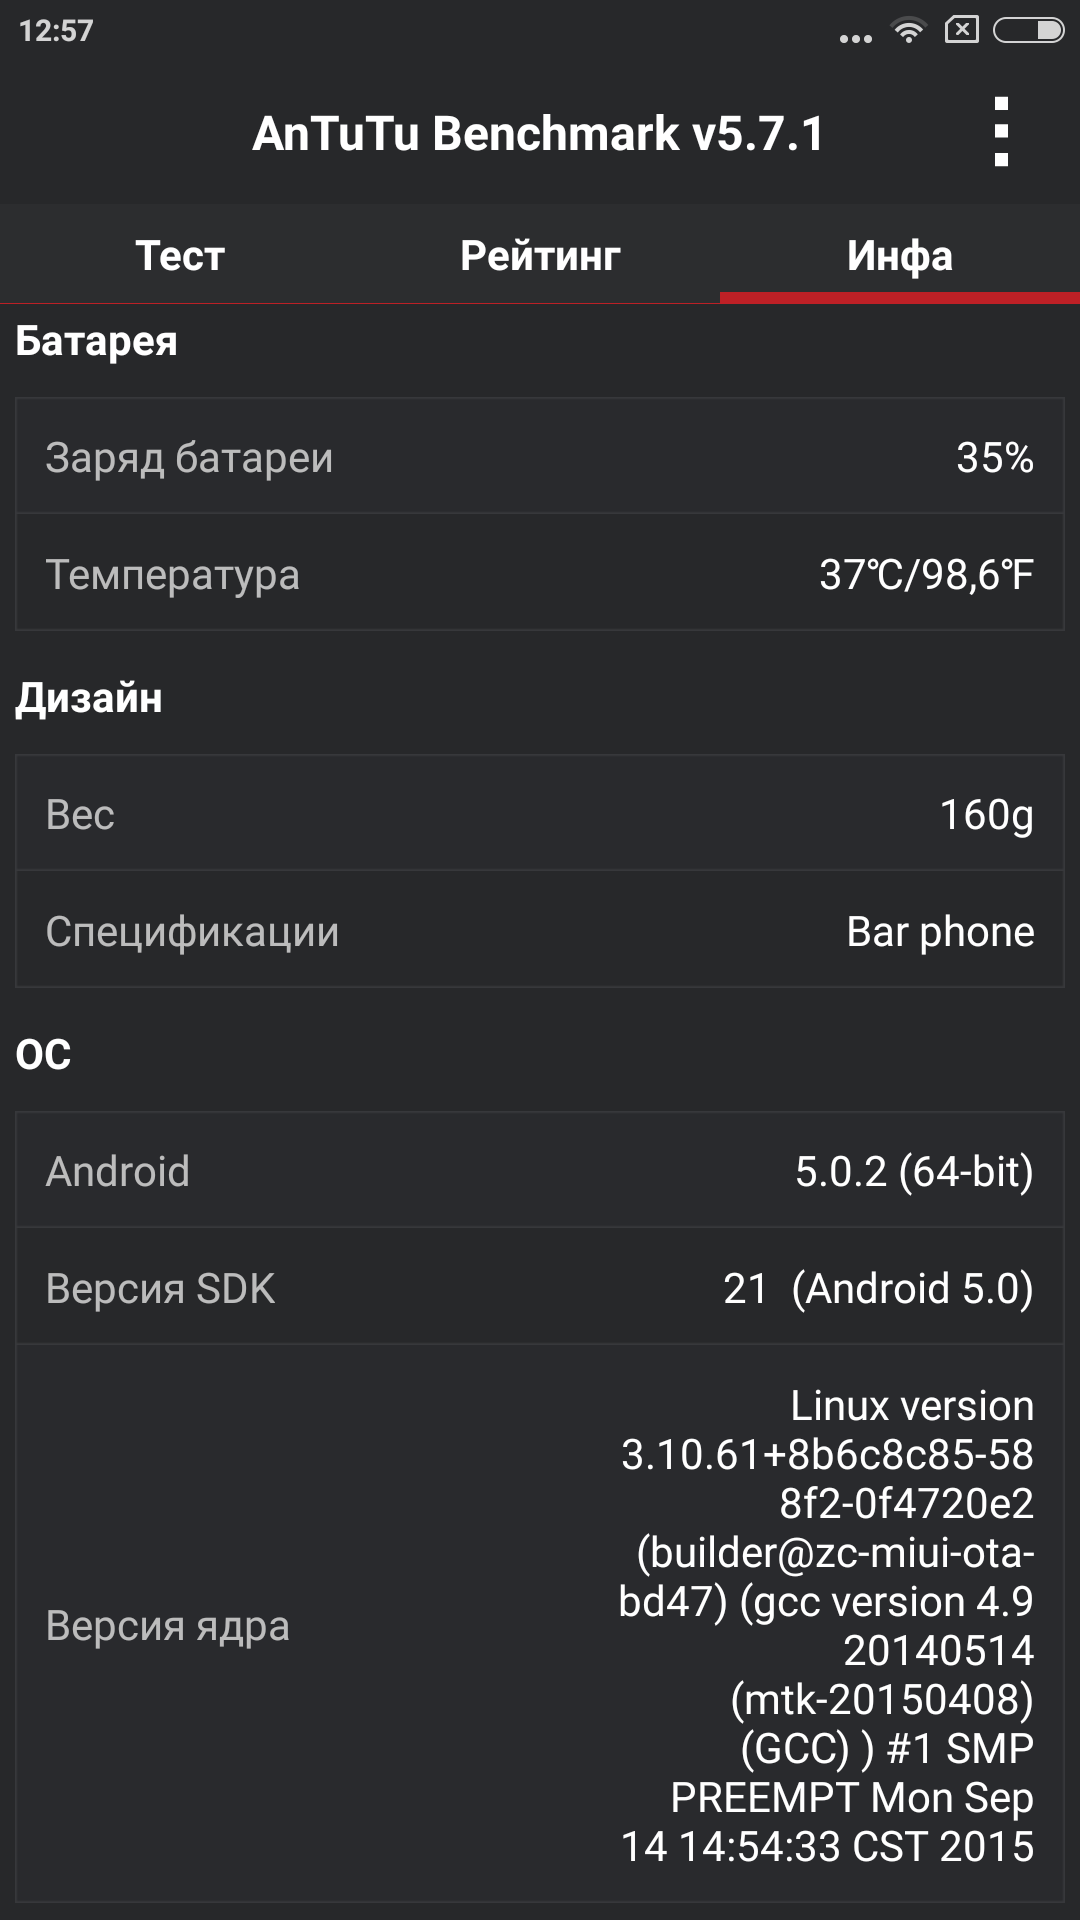 Обзор лучшего бюджетника 2015 года — Xiaomi Redmi Note 2 - 54